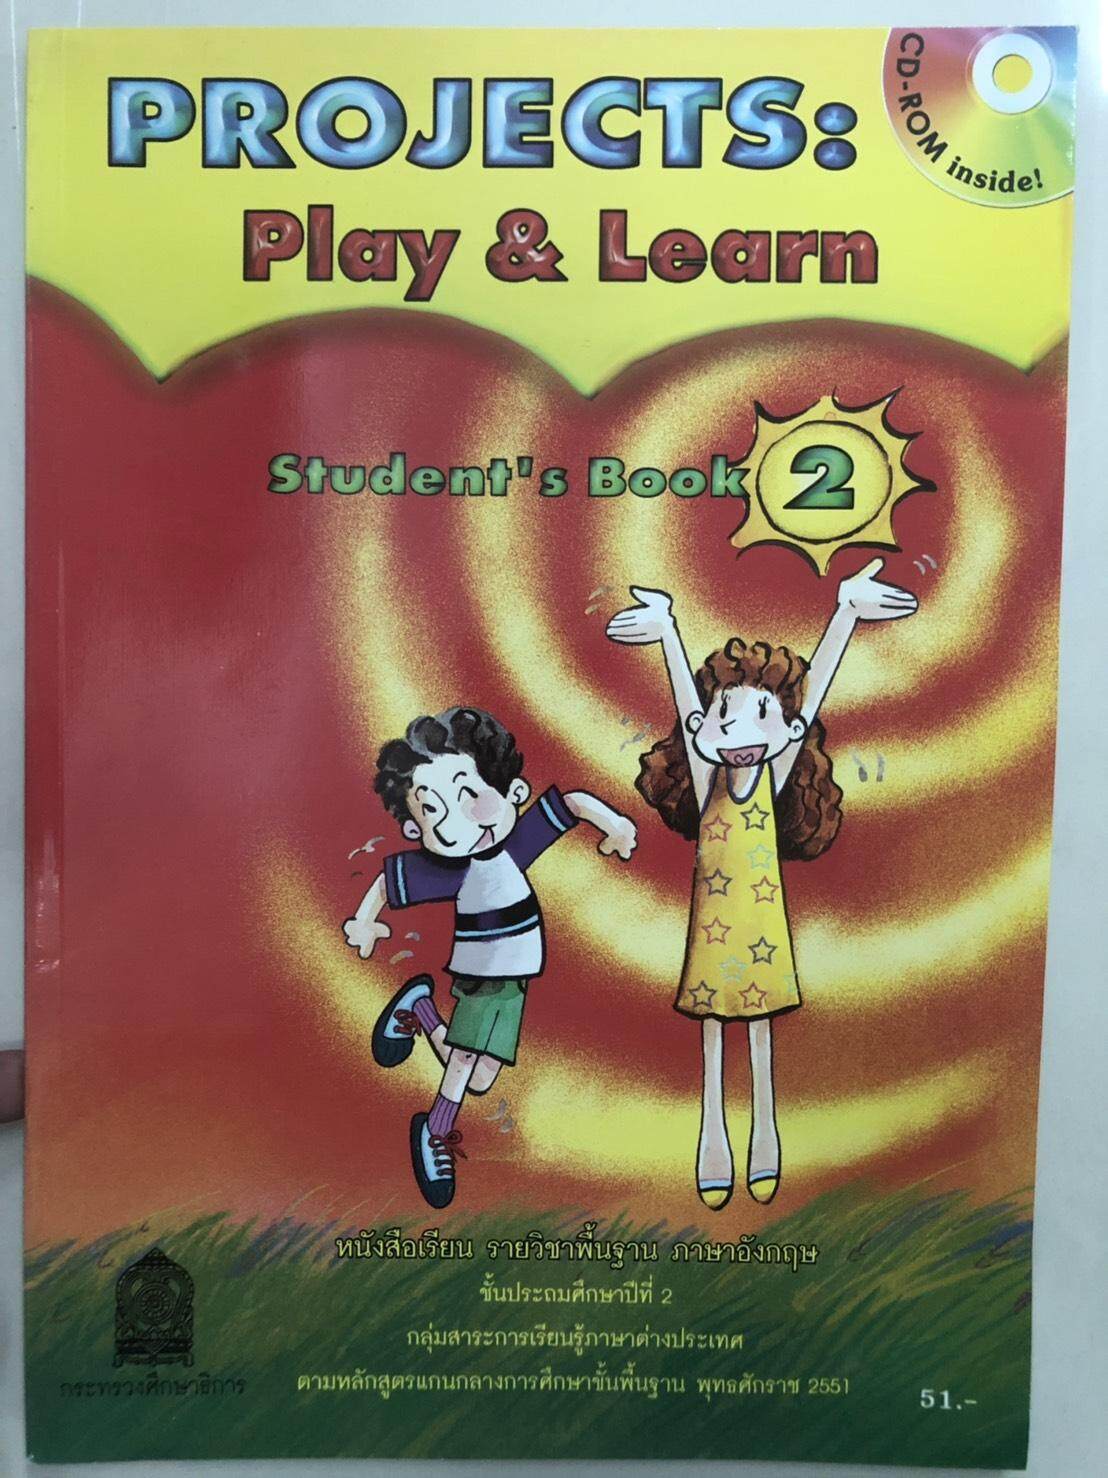 หนังสือเรียน  Projects : Play & Learn   Student's Book 2 ชั้นประถมศึกษาปีที่ 2  กระทรวงศึกษาธิการ